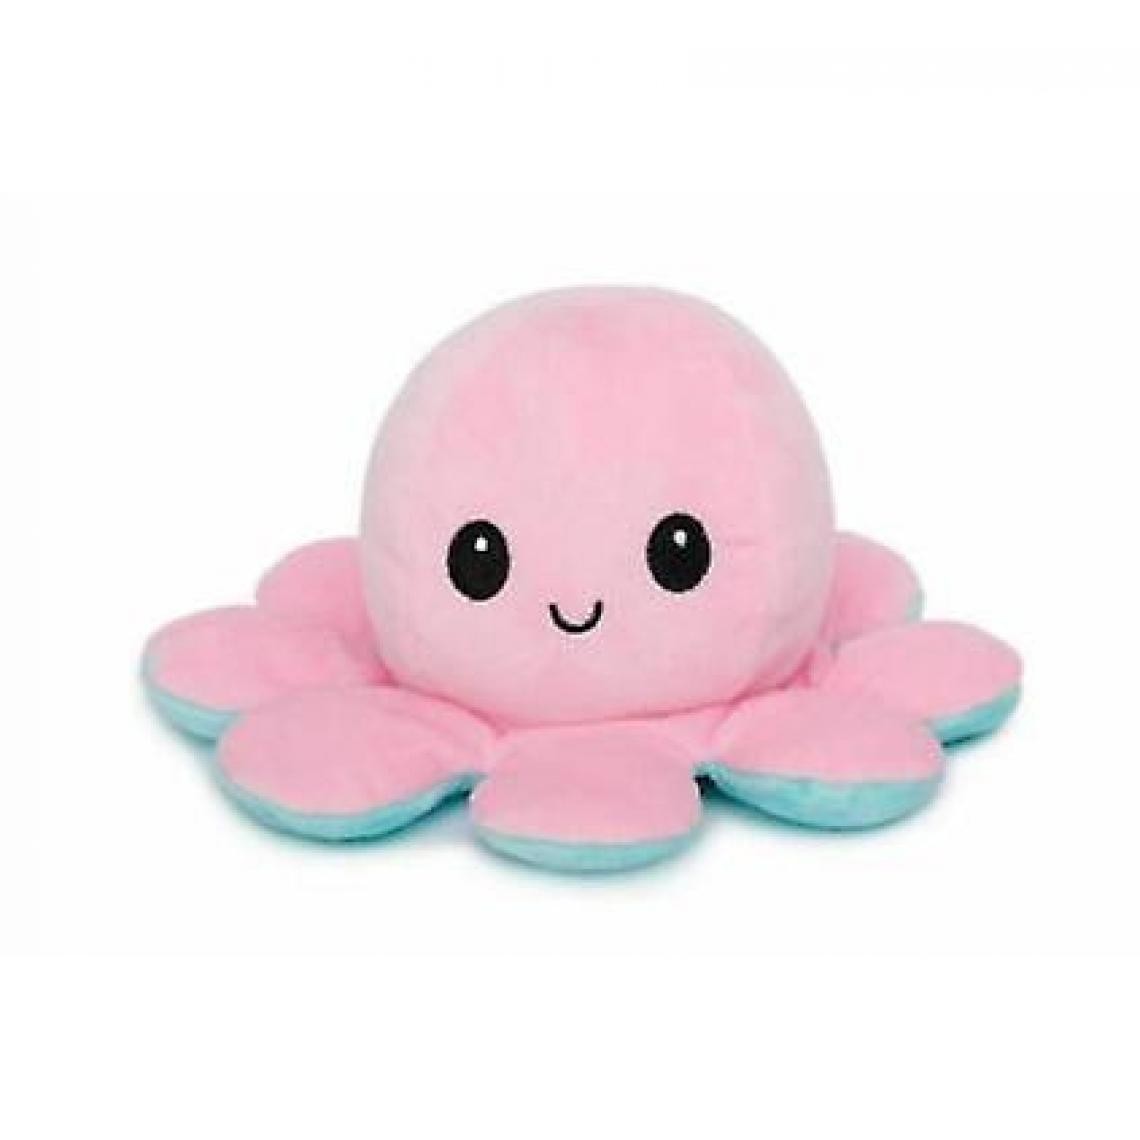 Universal - La pieuvre en peluche est réversible, mignonne, retournée, jouets doux, cadeaux, joie et tristesse (bleu et rose). - Doudous